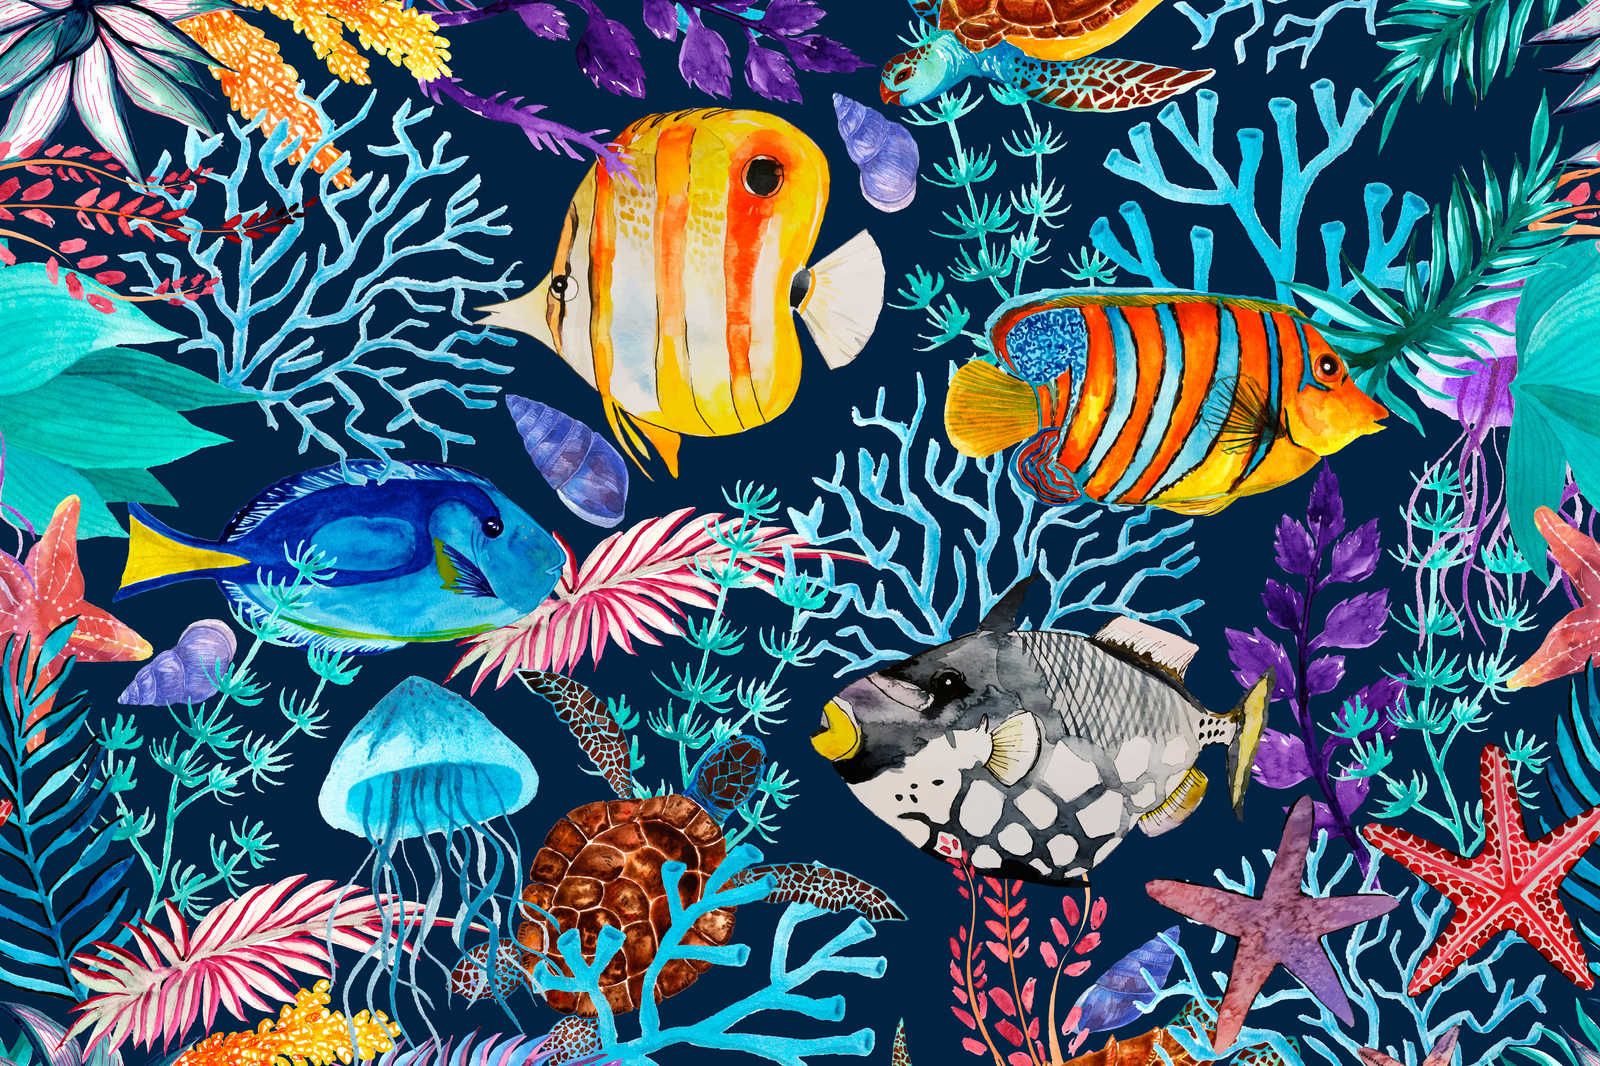             Pittura su tela subacquea con pesci e stelle marine colorate - 0,90 m x 0,60 m
        